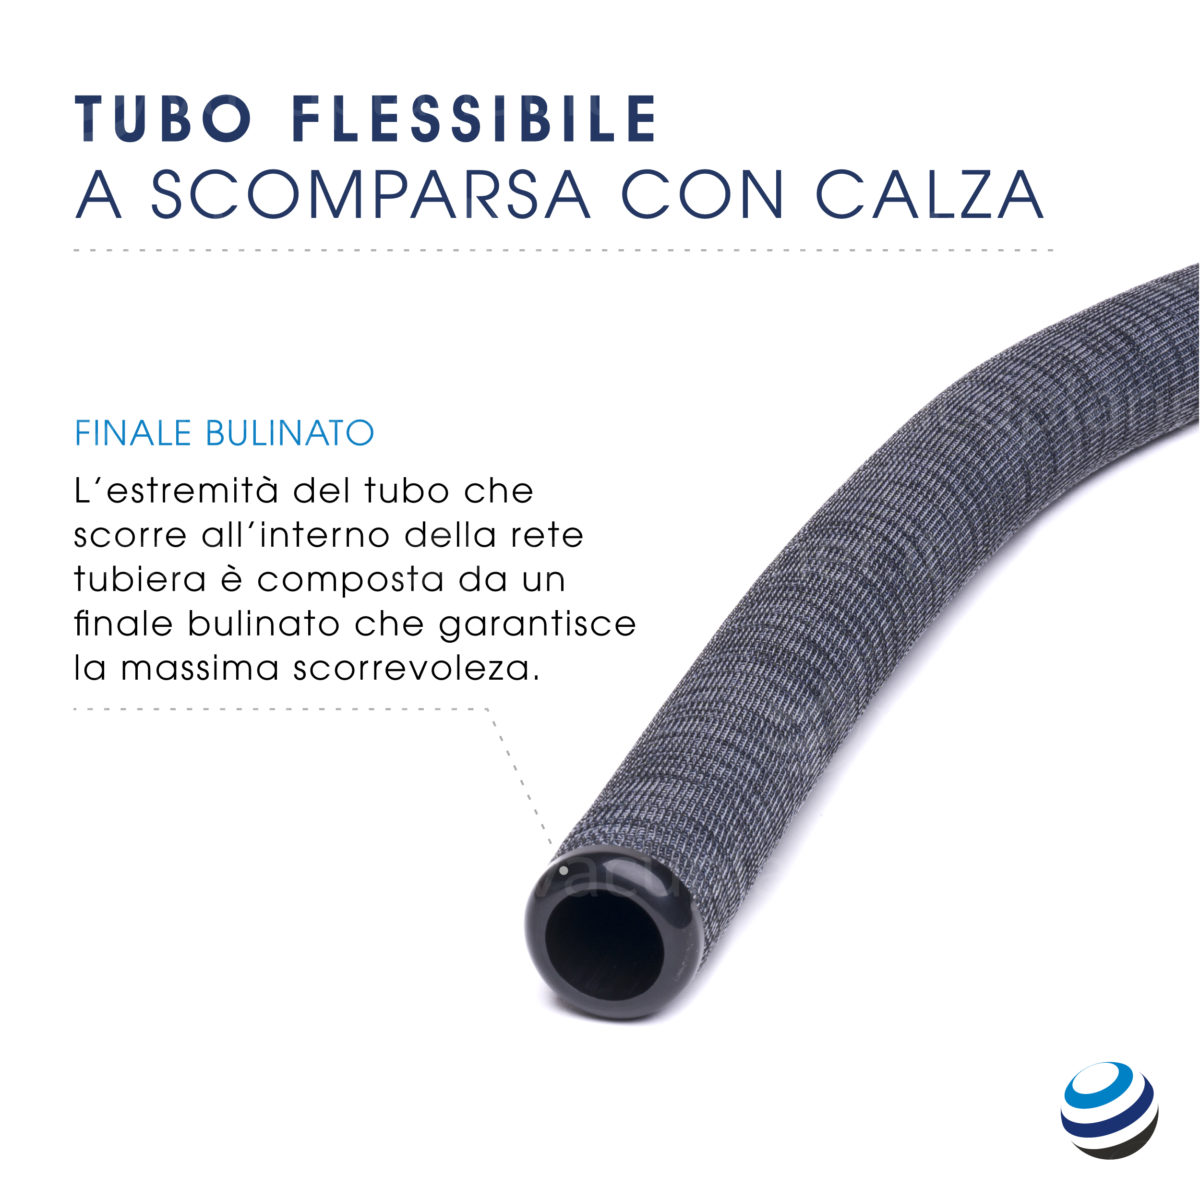 L'estremità del tubo che scorre all'interno della rete tubiera è composta da un finale bulinato che garantisce la massima scorrevolezza.